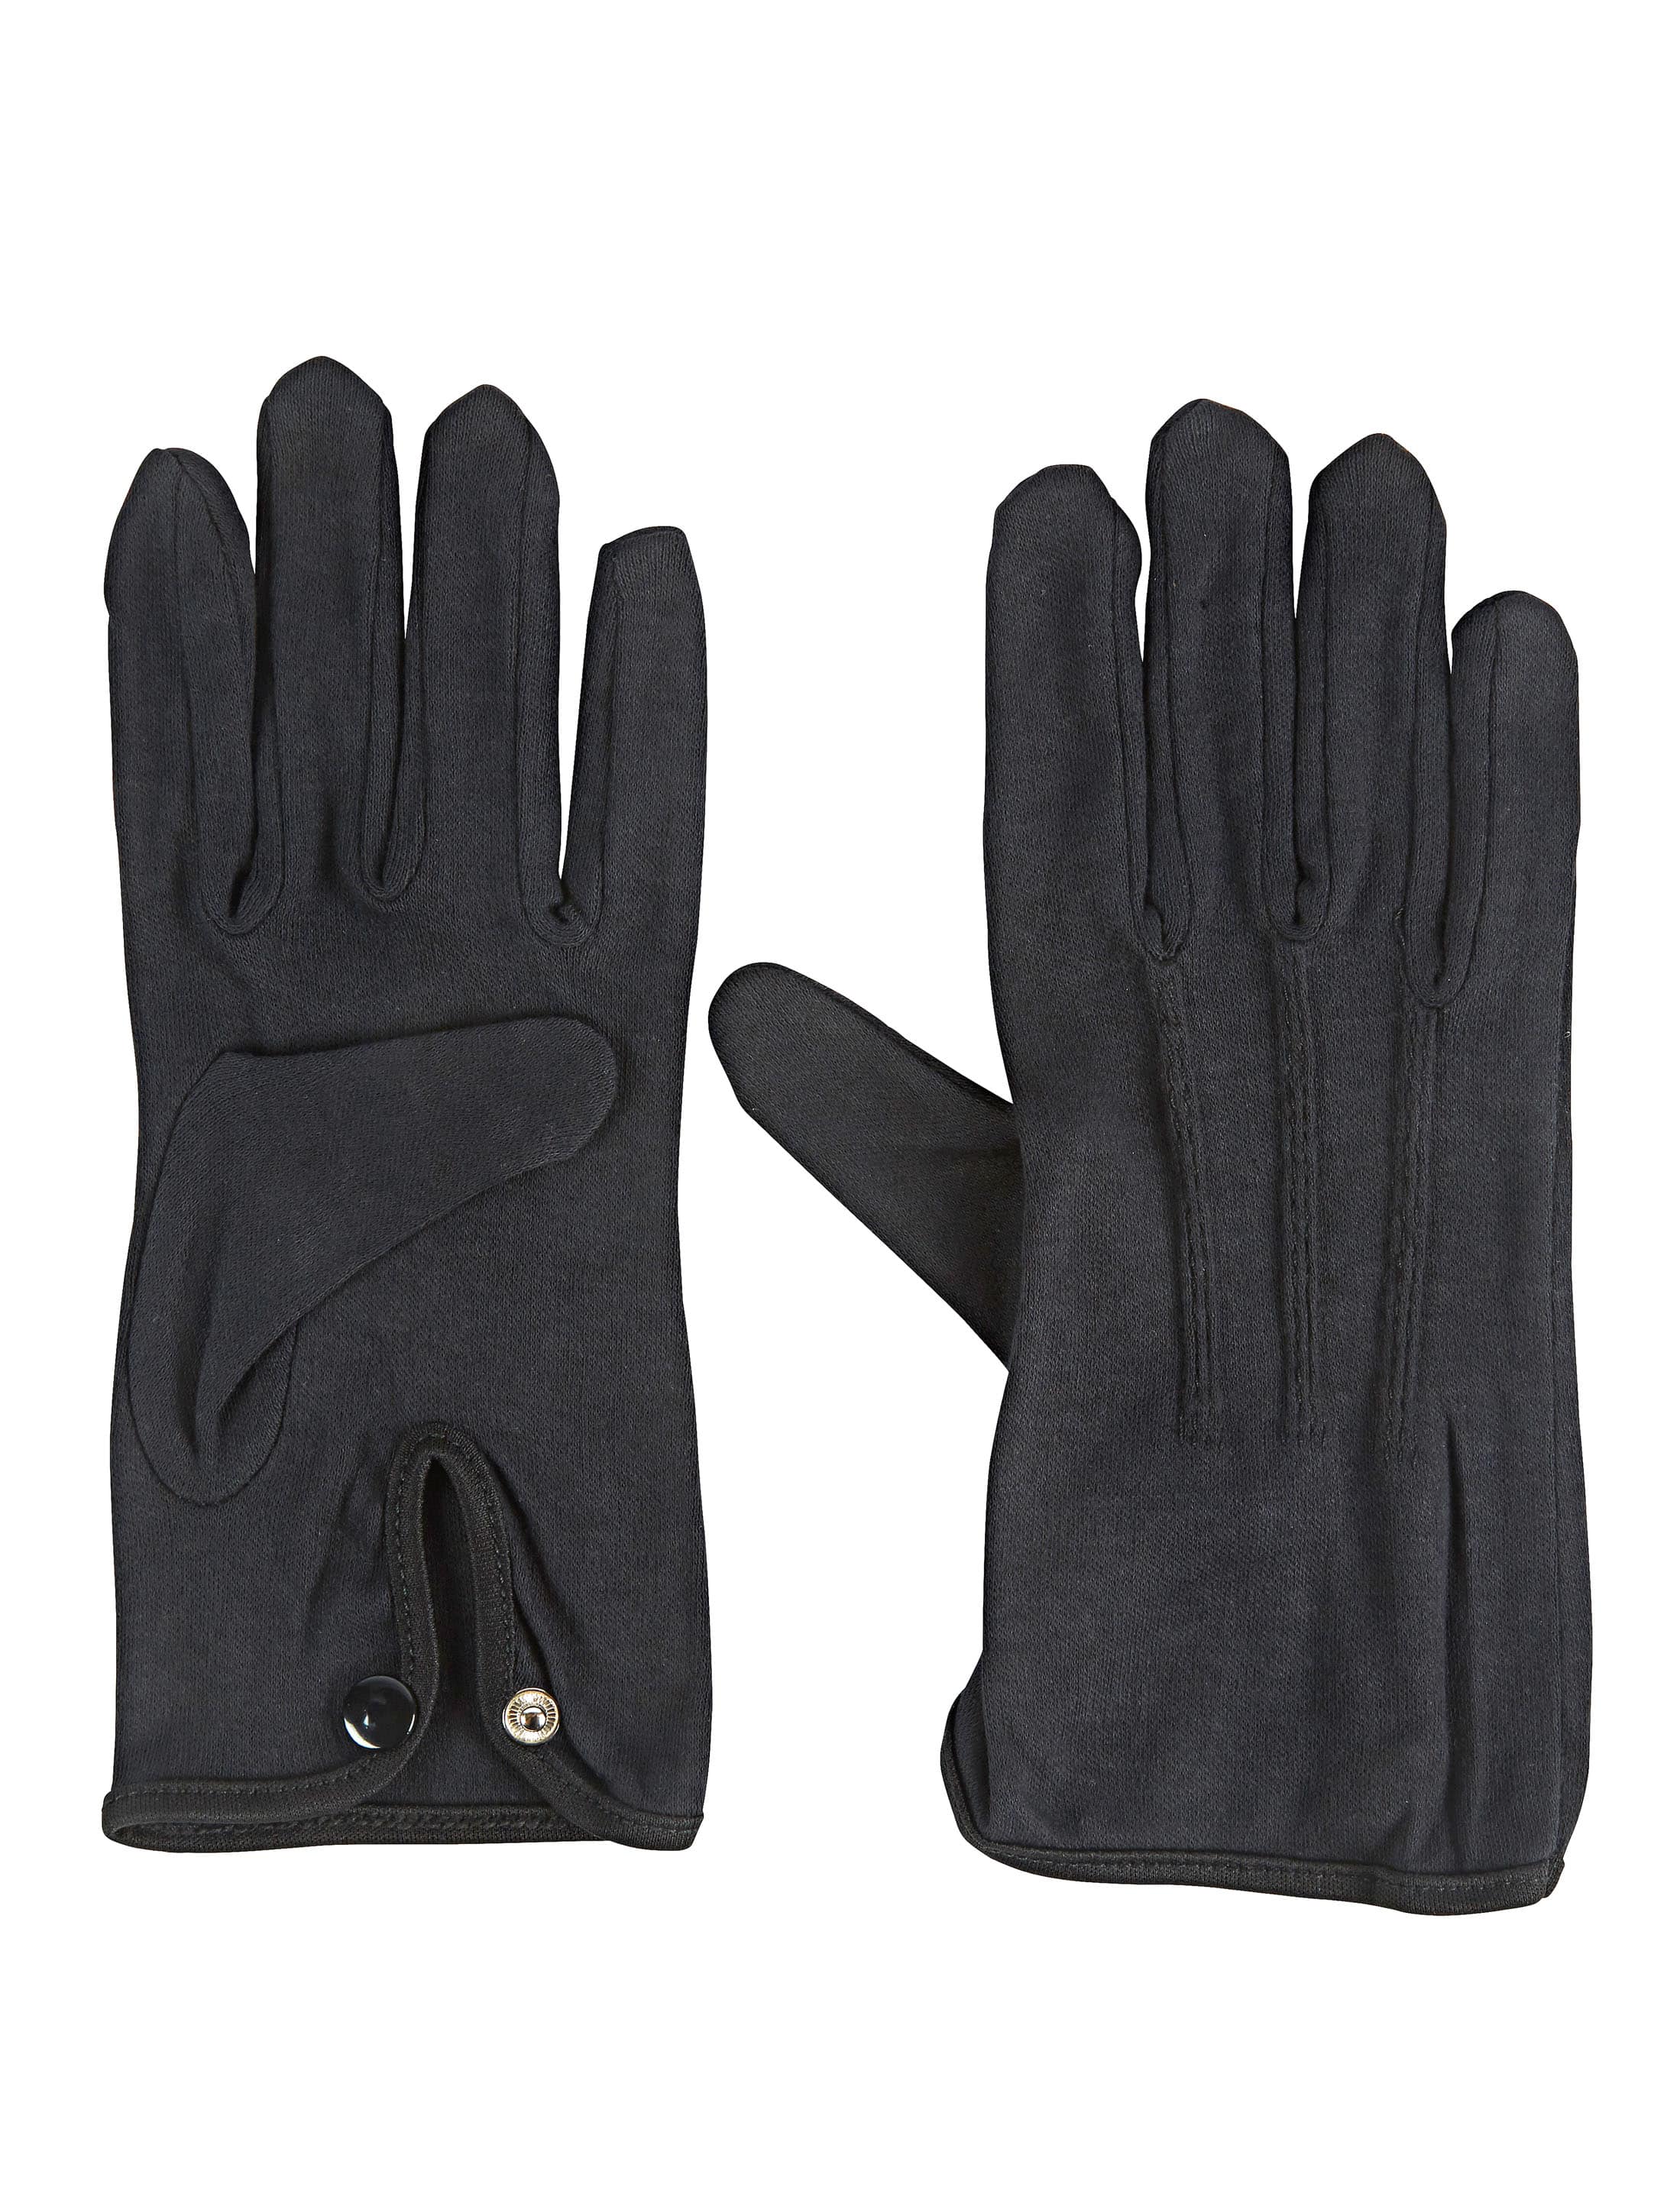 Handschuhe Baumwolle mit Knopf schwarz XL